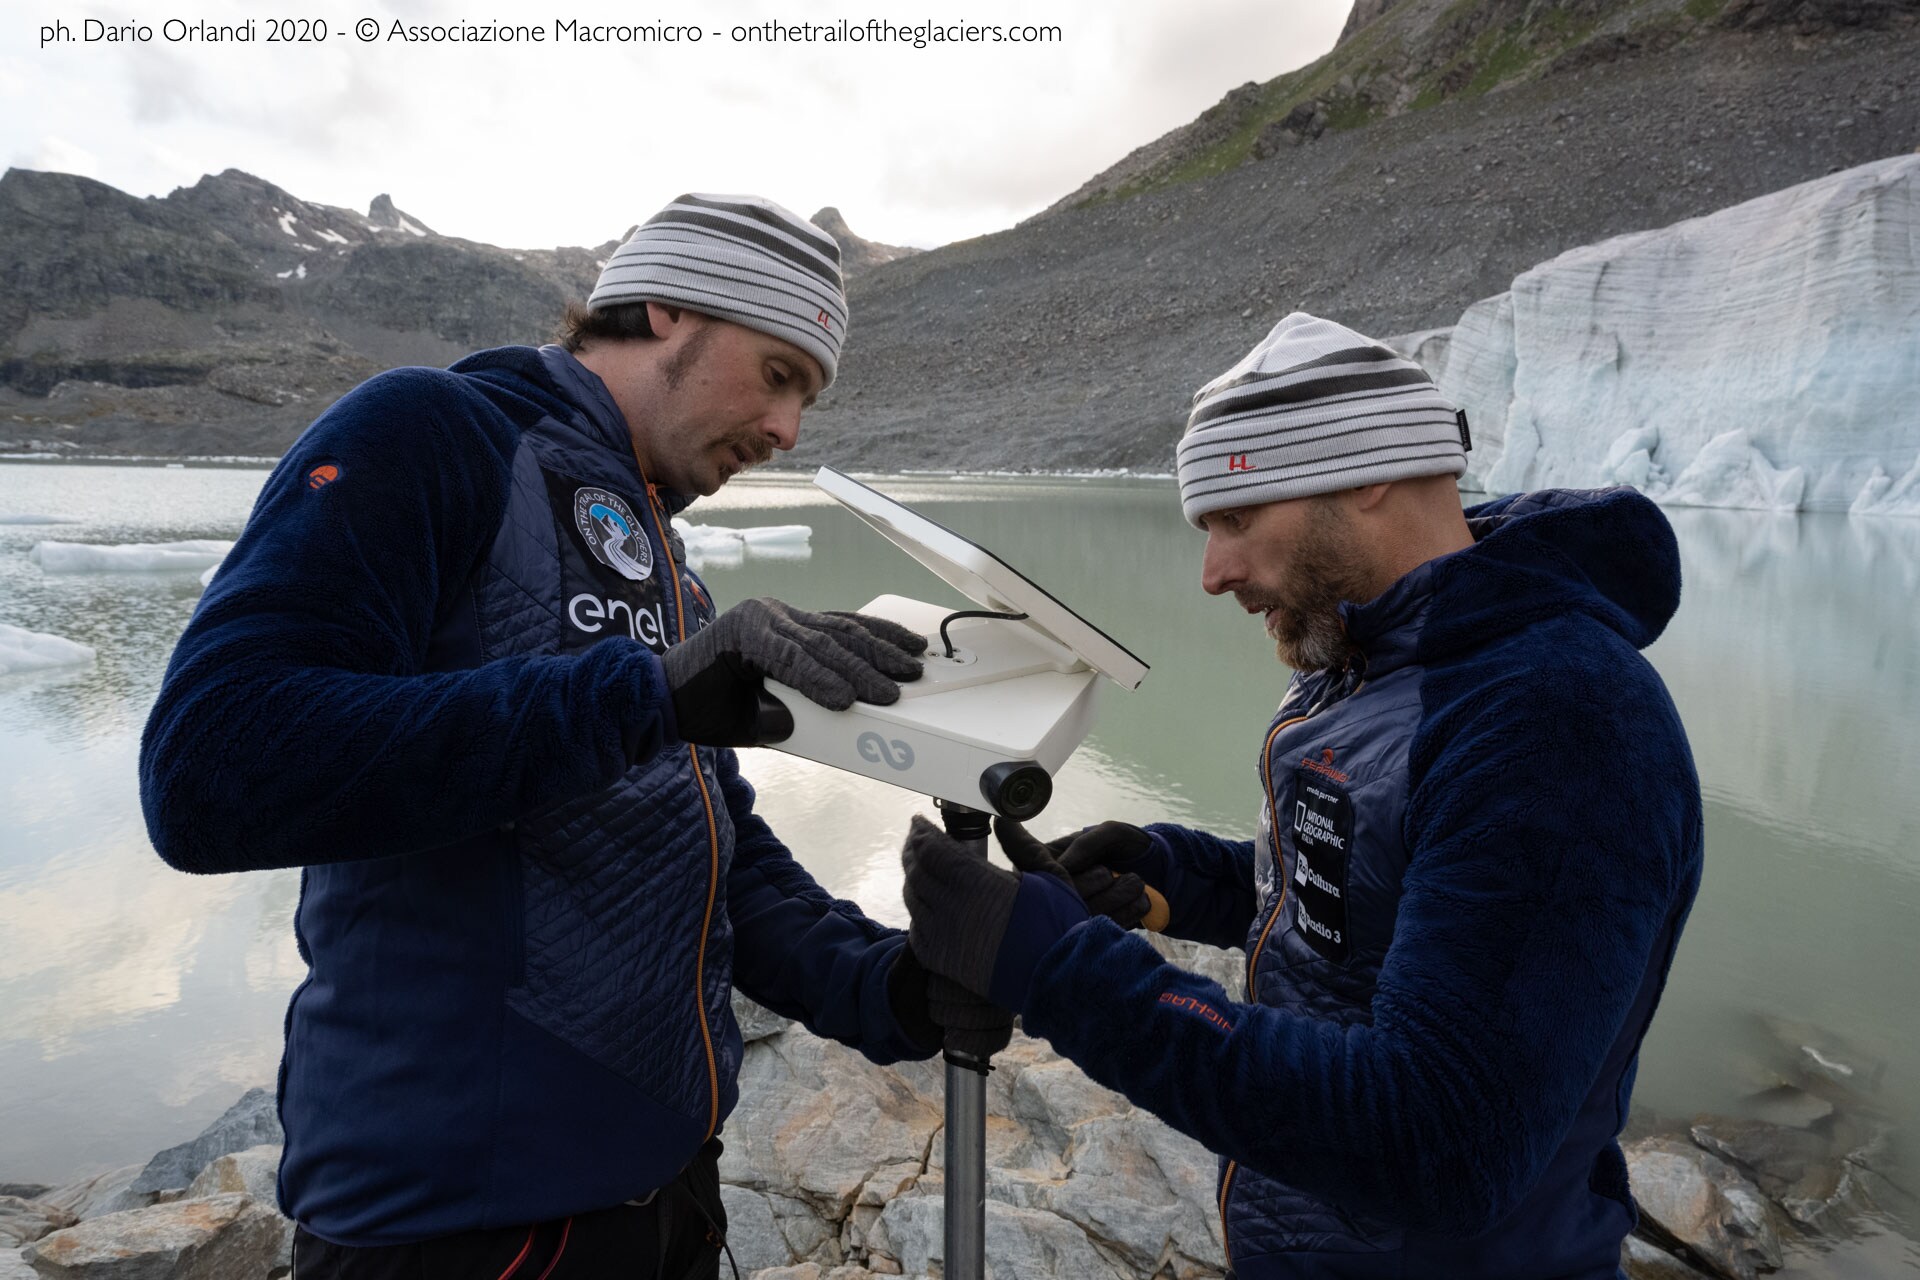 Sulle tracce dei ghiacciai - Alpi 2020